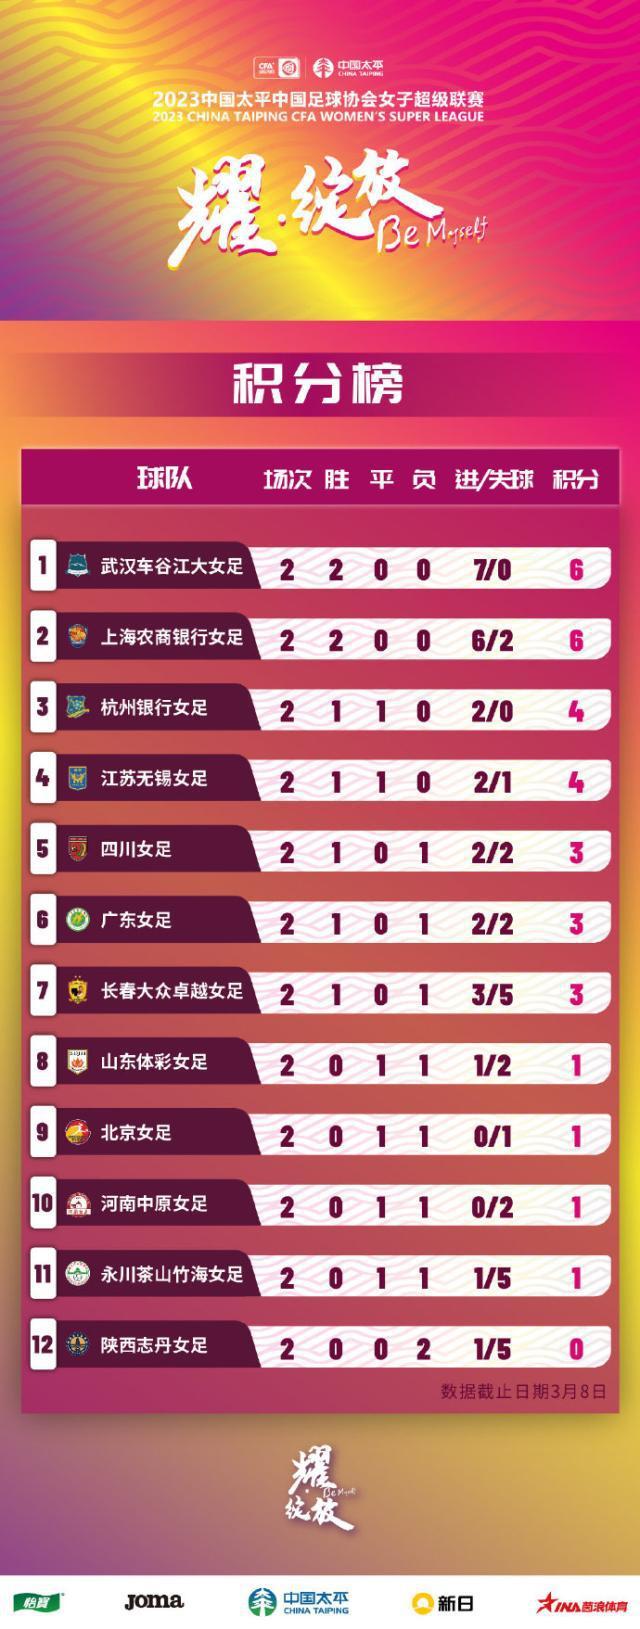 [女超第2轮综述]武汉上海2连胜 陕西志丹连败垫底